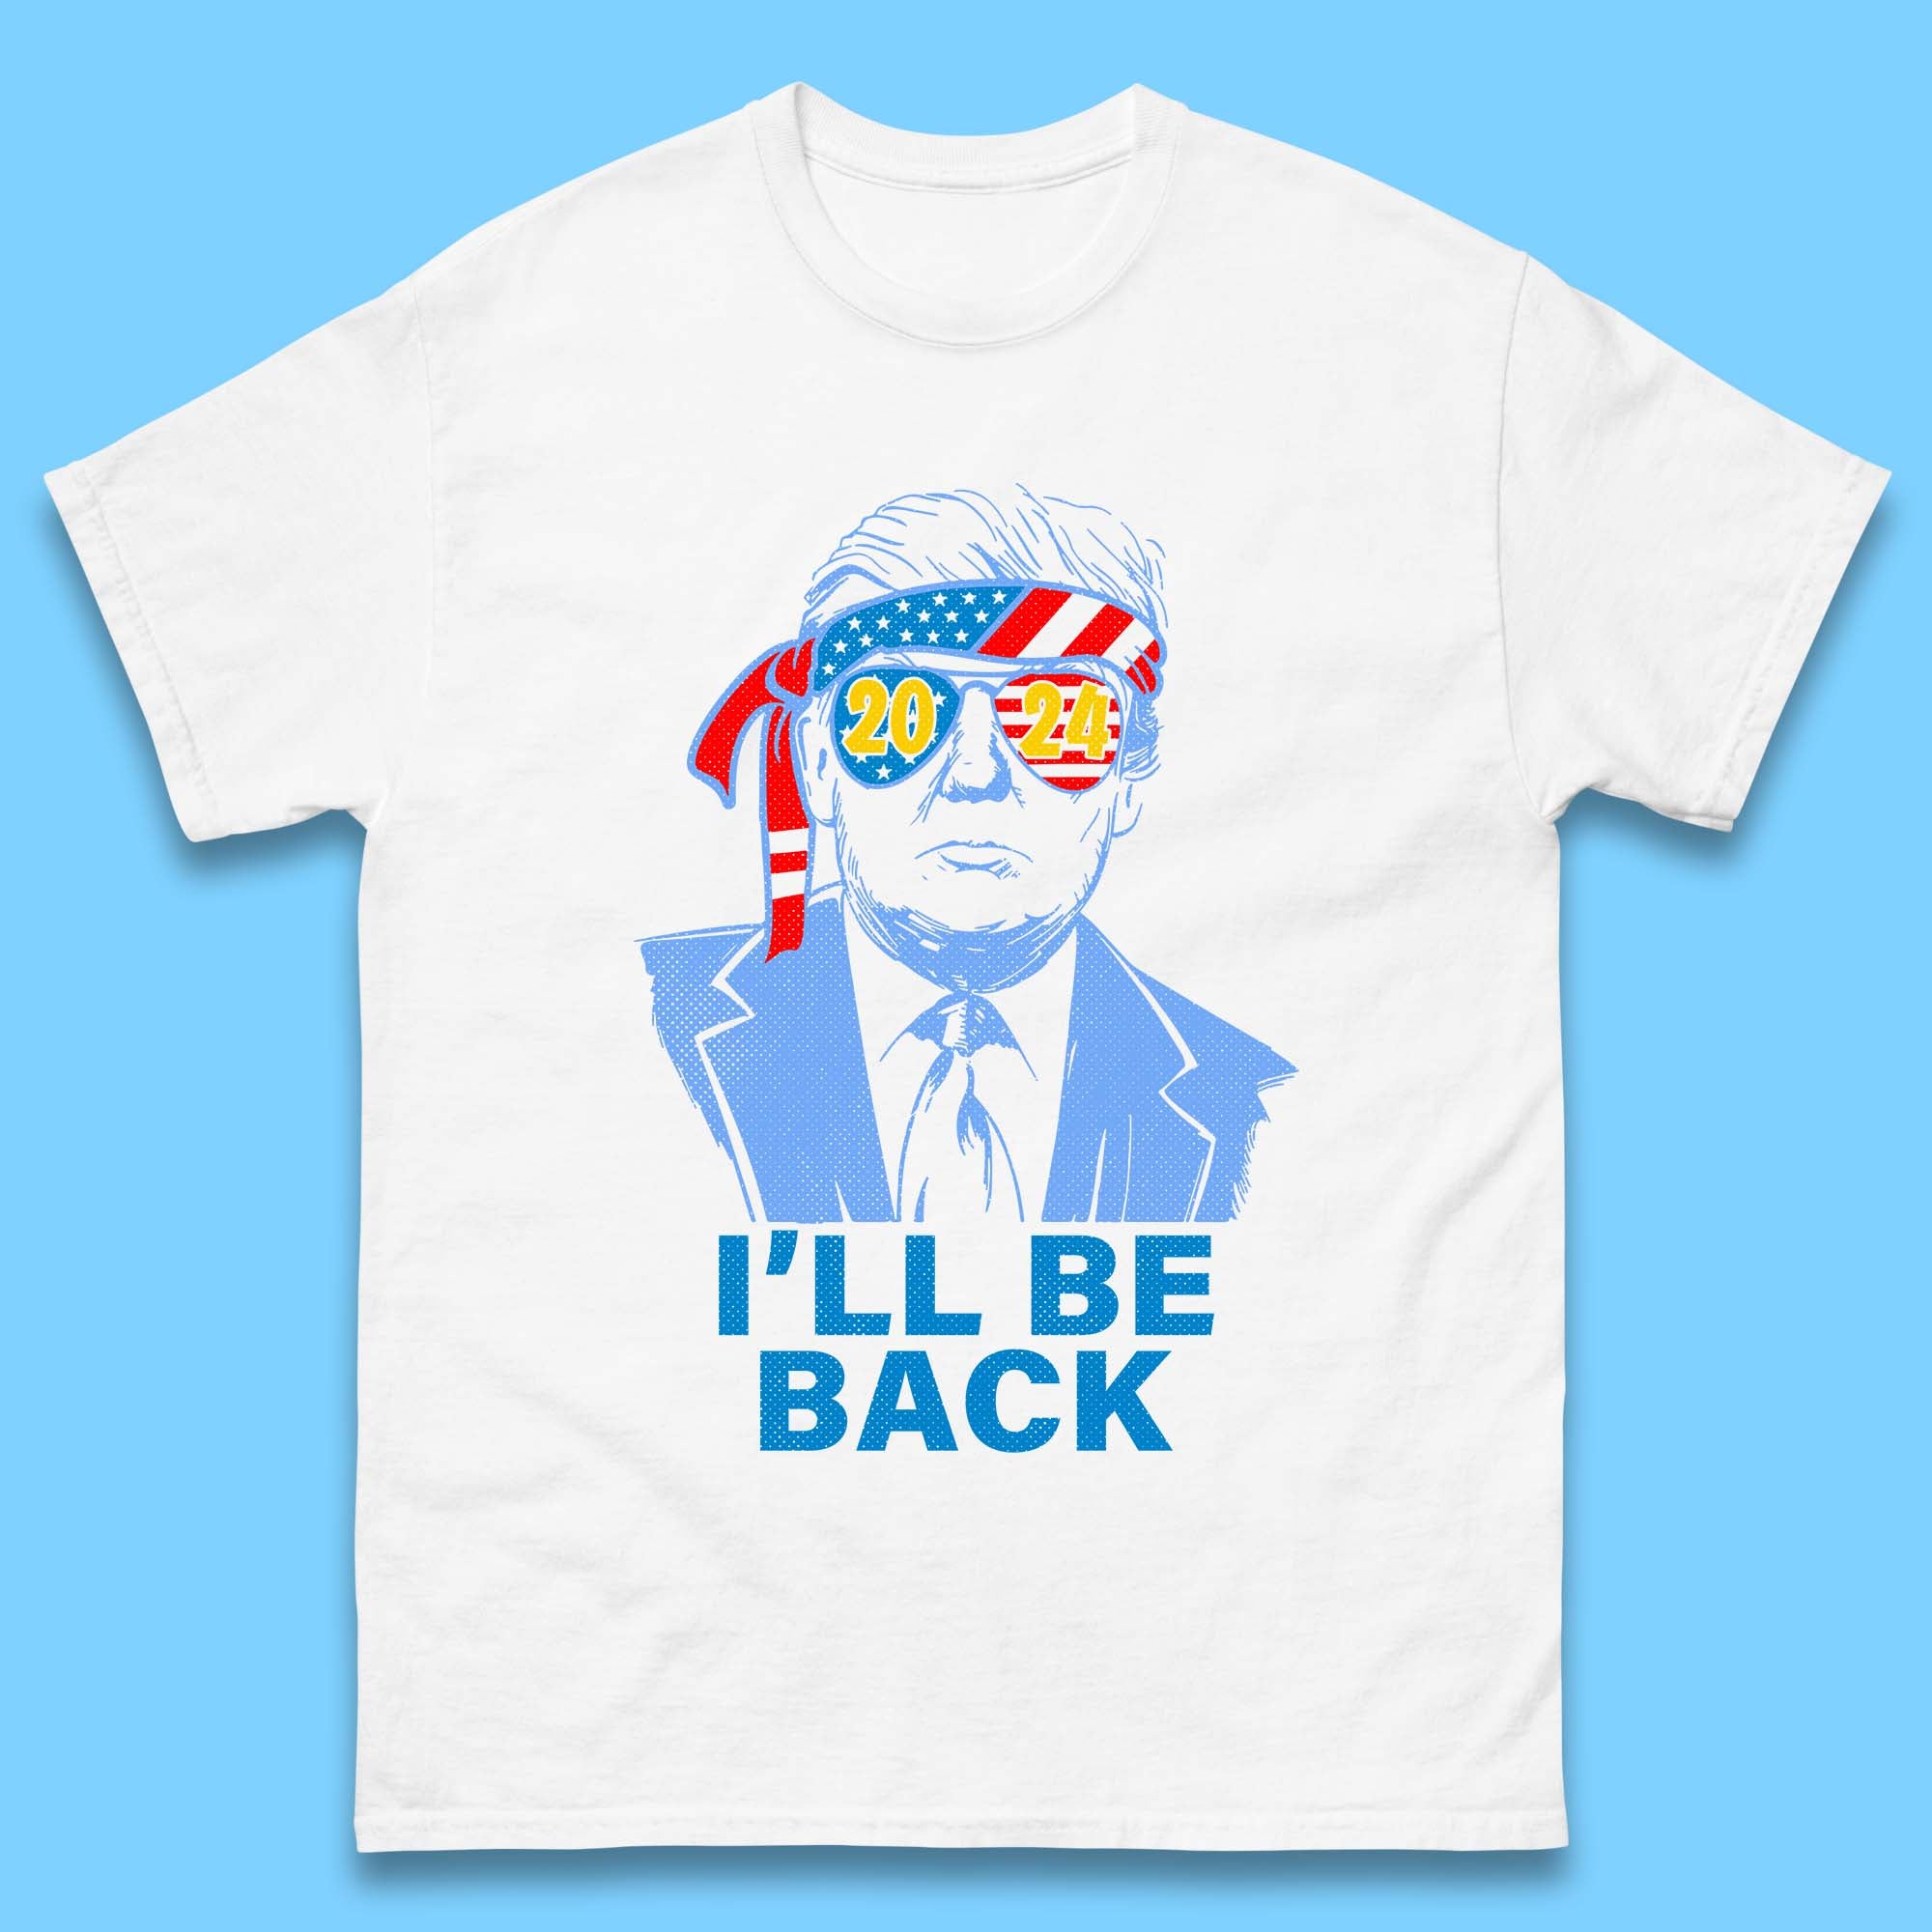 Donald Trump 2024 T Shirt